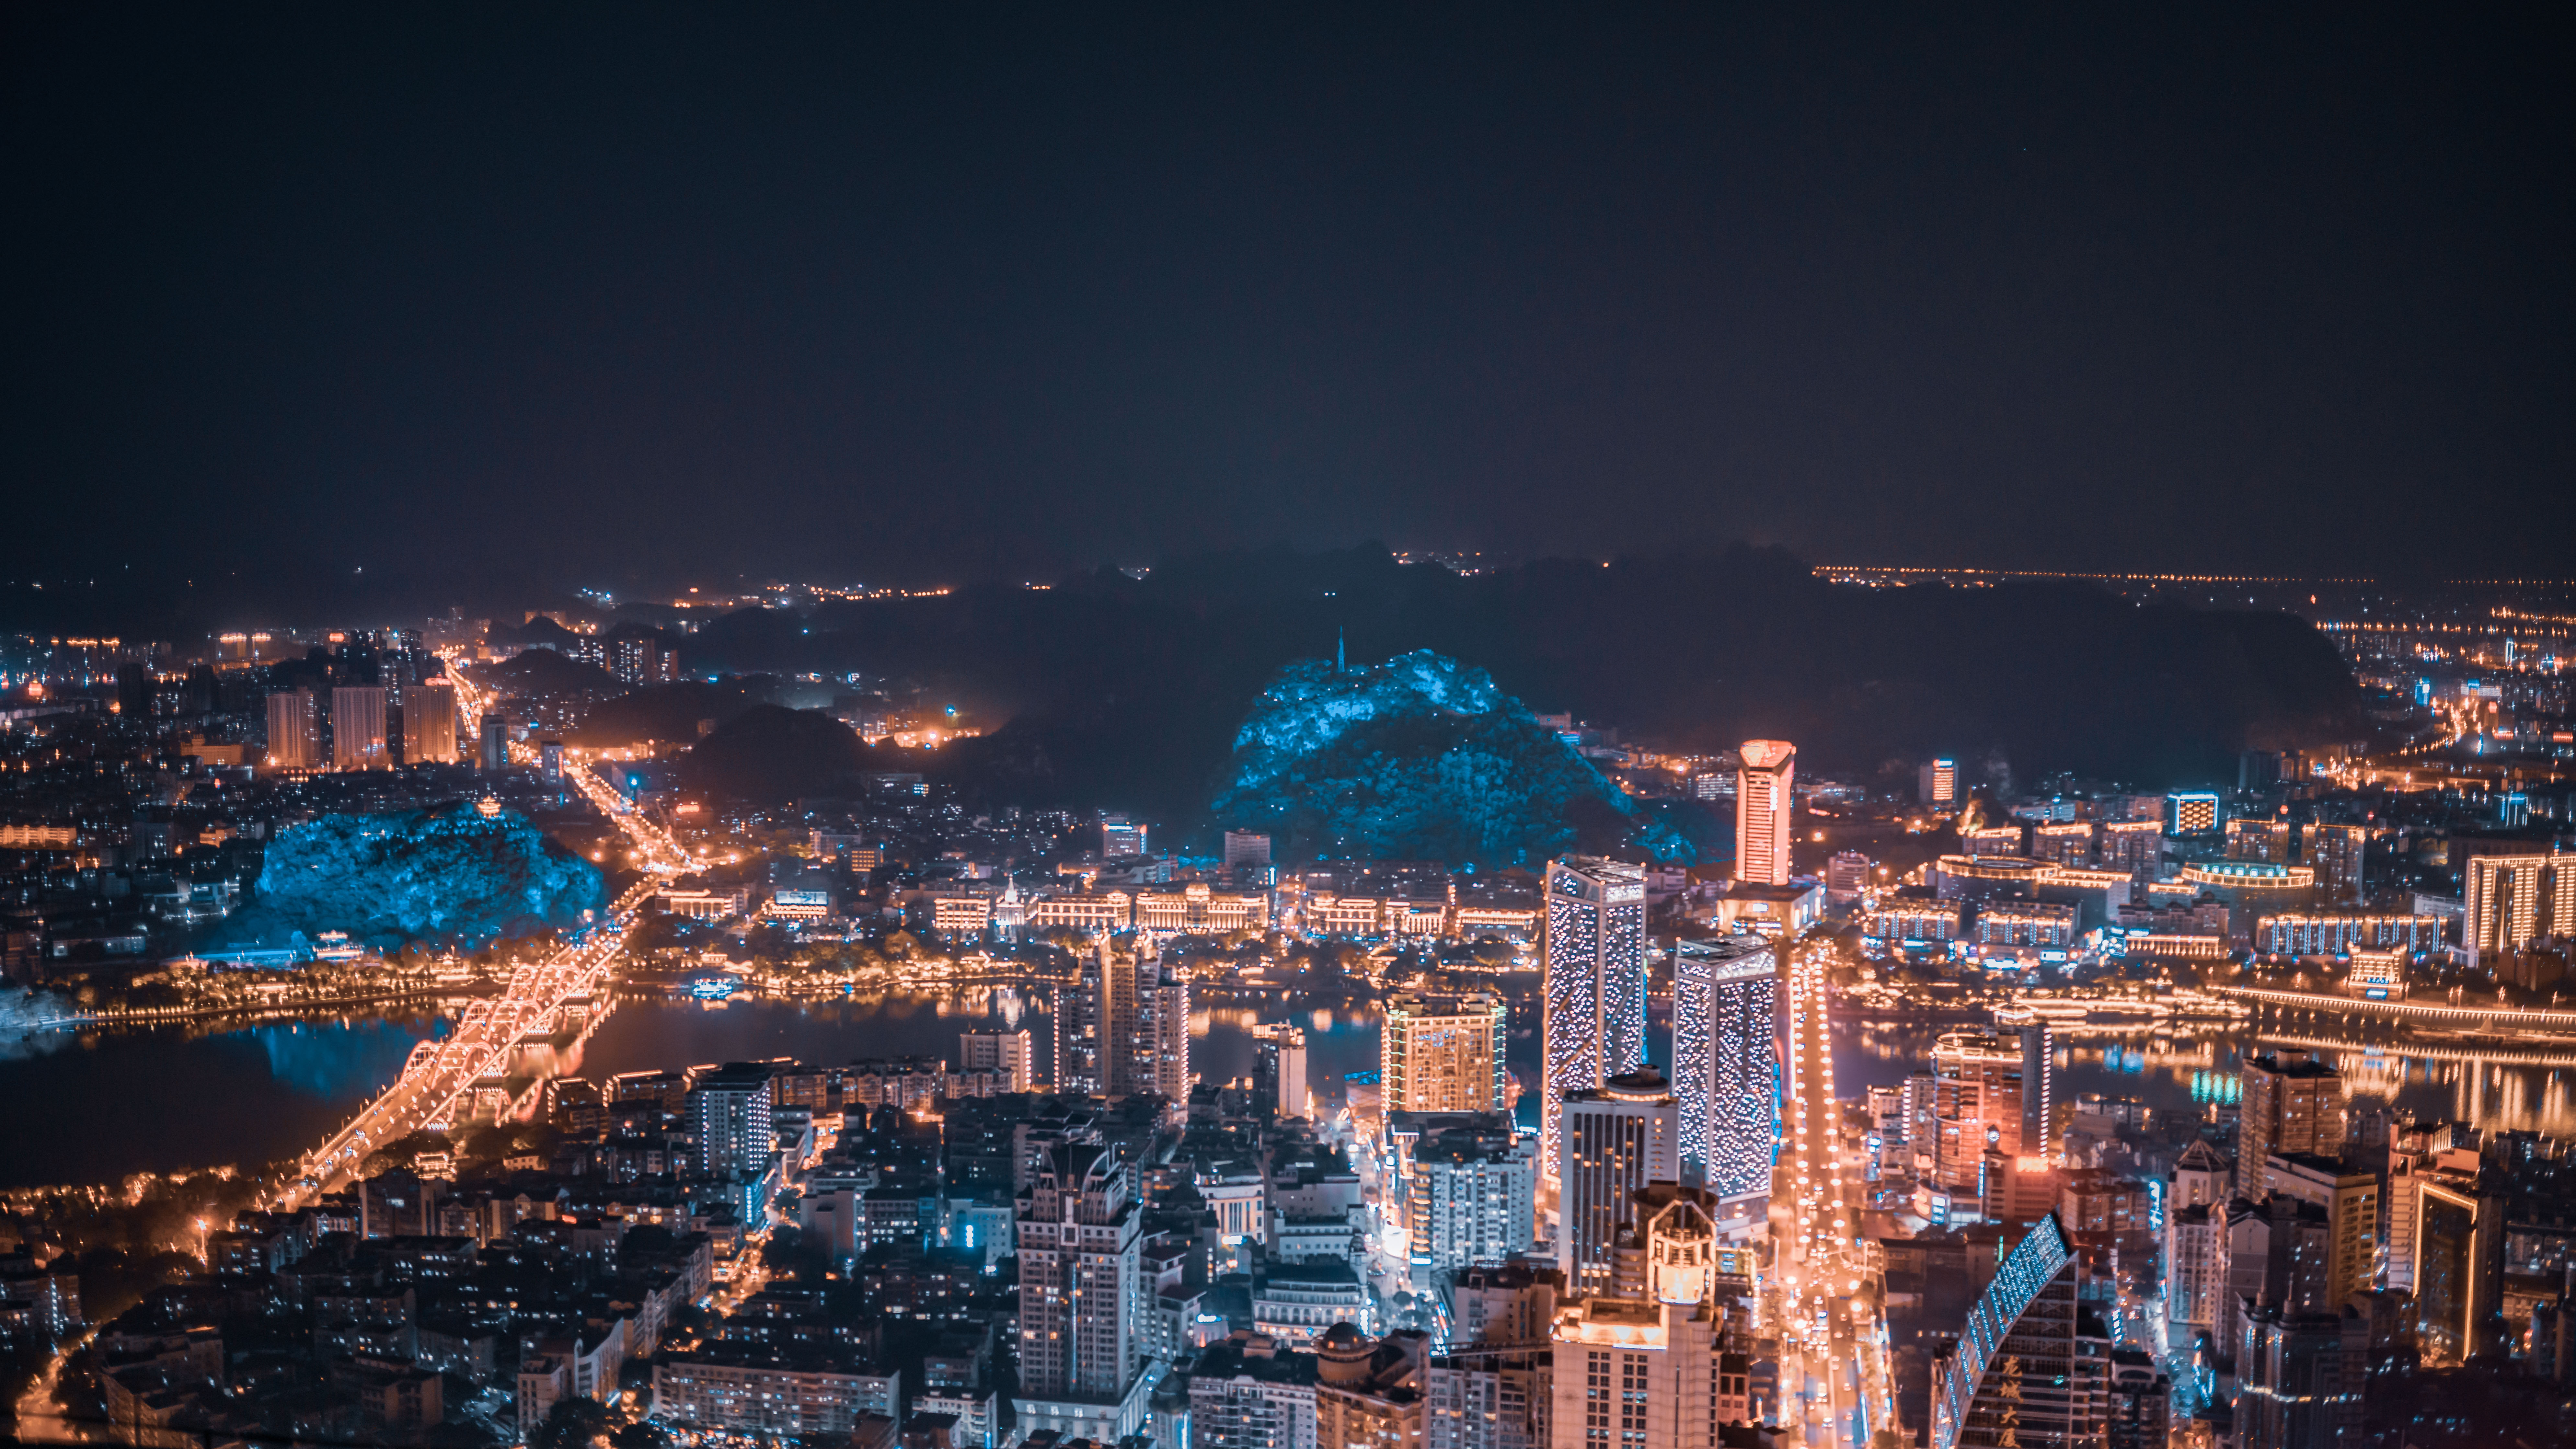 柳州地王国际财富中心楼顶拍摄柳州夜景20191029